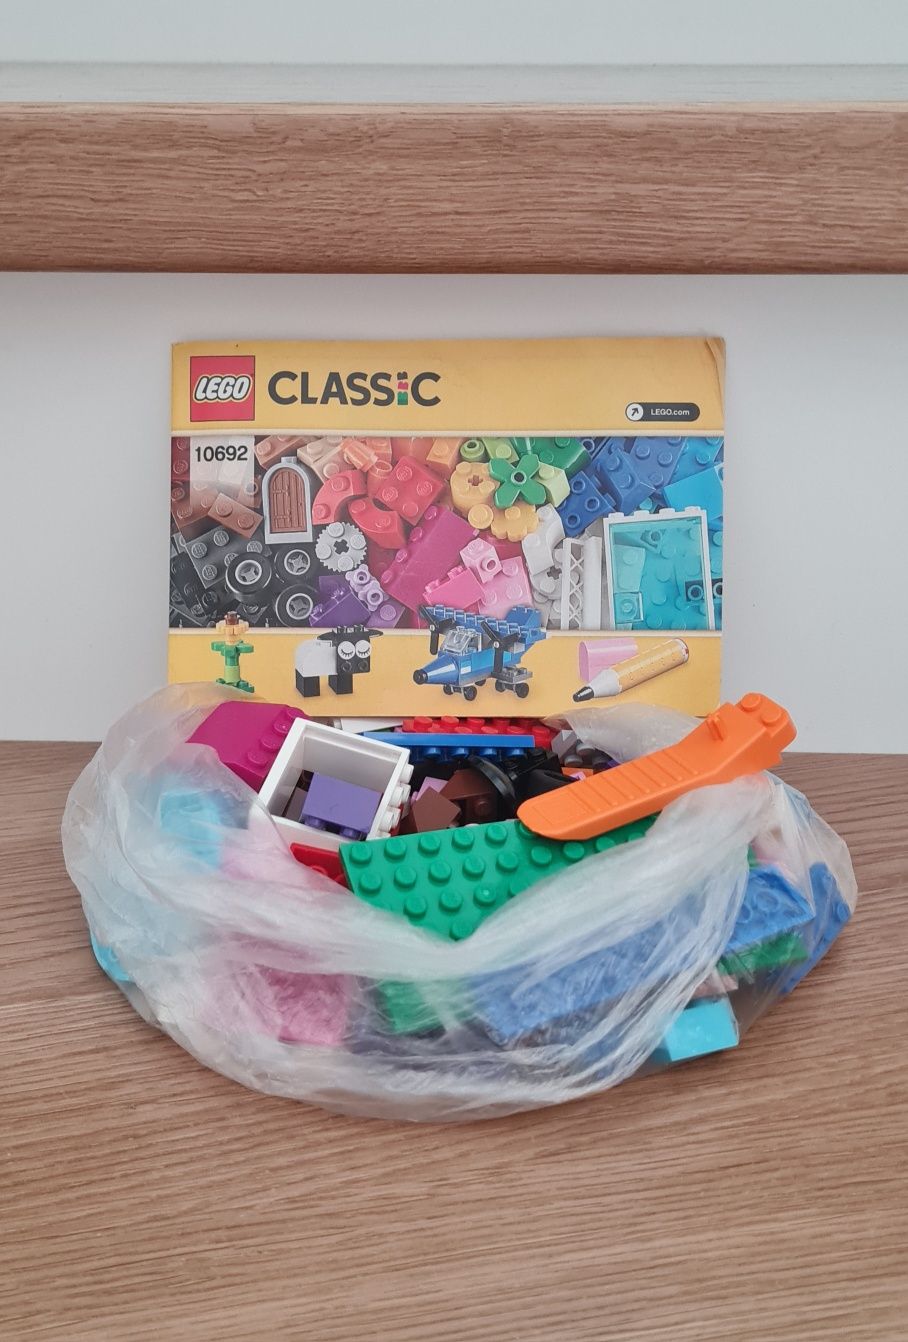 Lego classic 10692